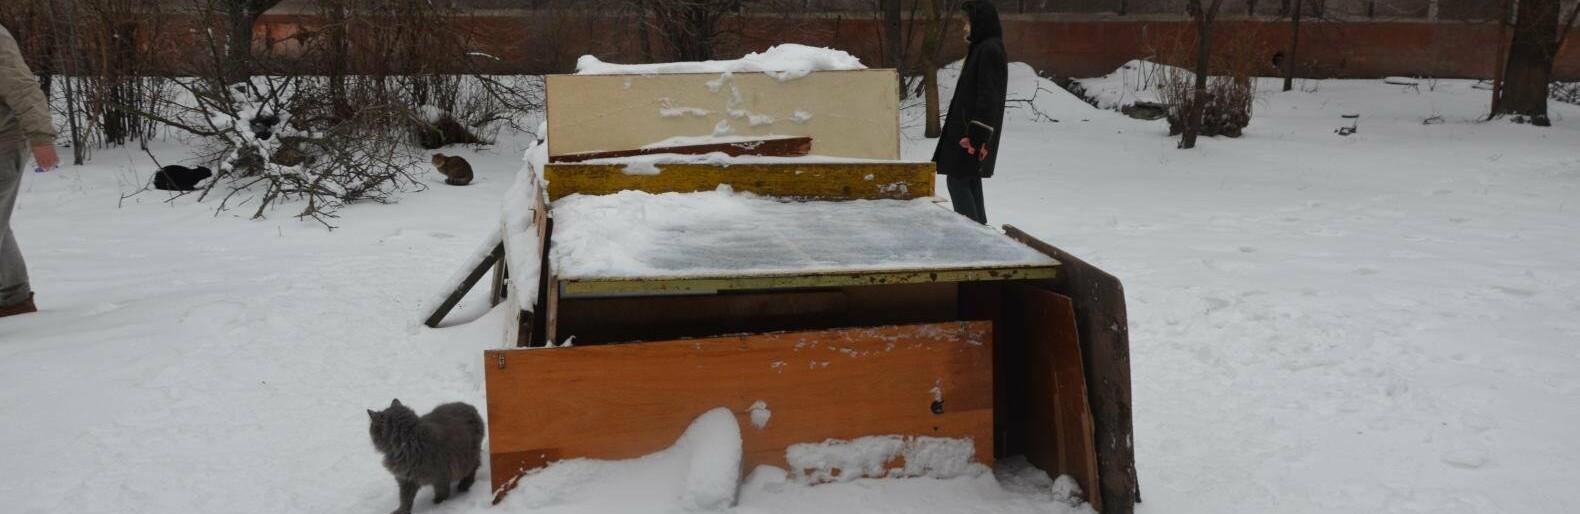 Статья Жители Мариуполя построили домик для бездомных котов из теннисного стола (фото) Утренний город. Одесса